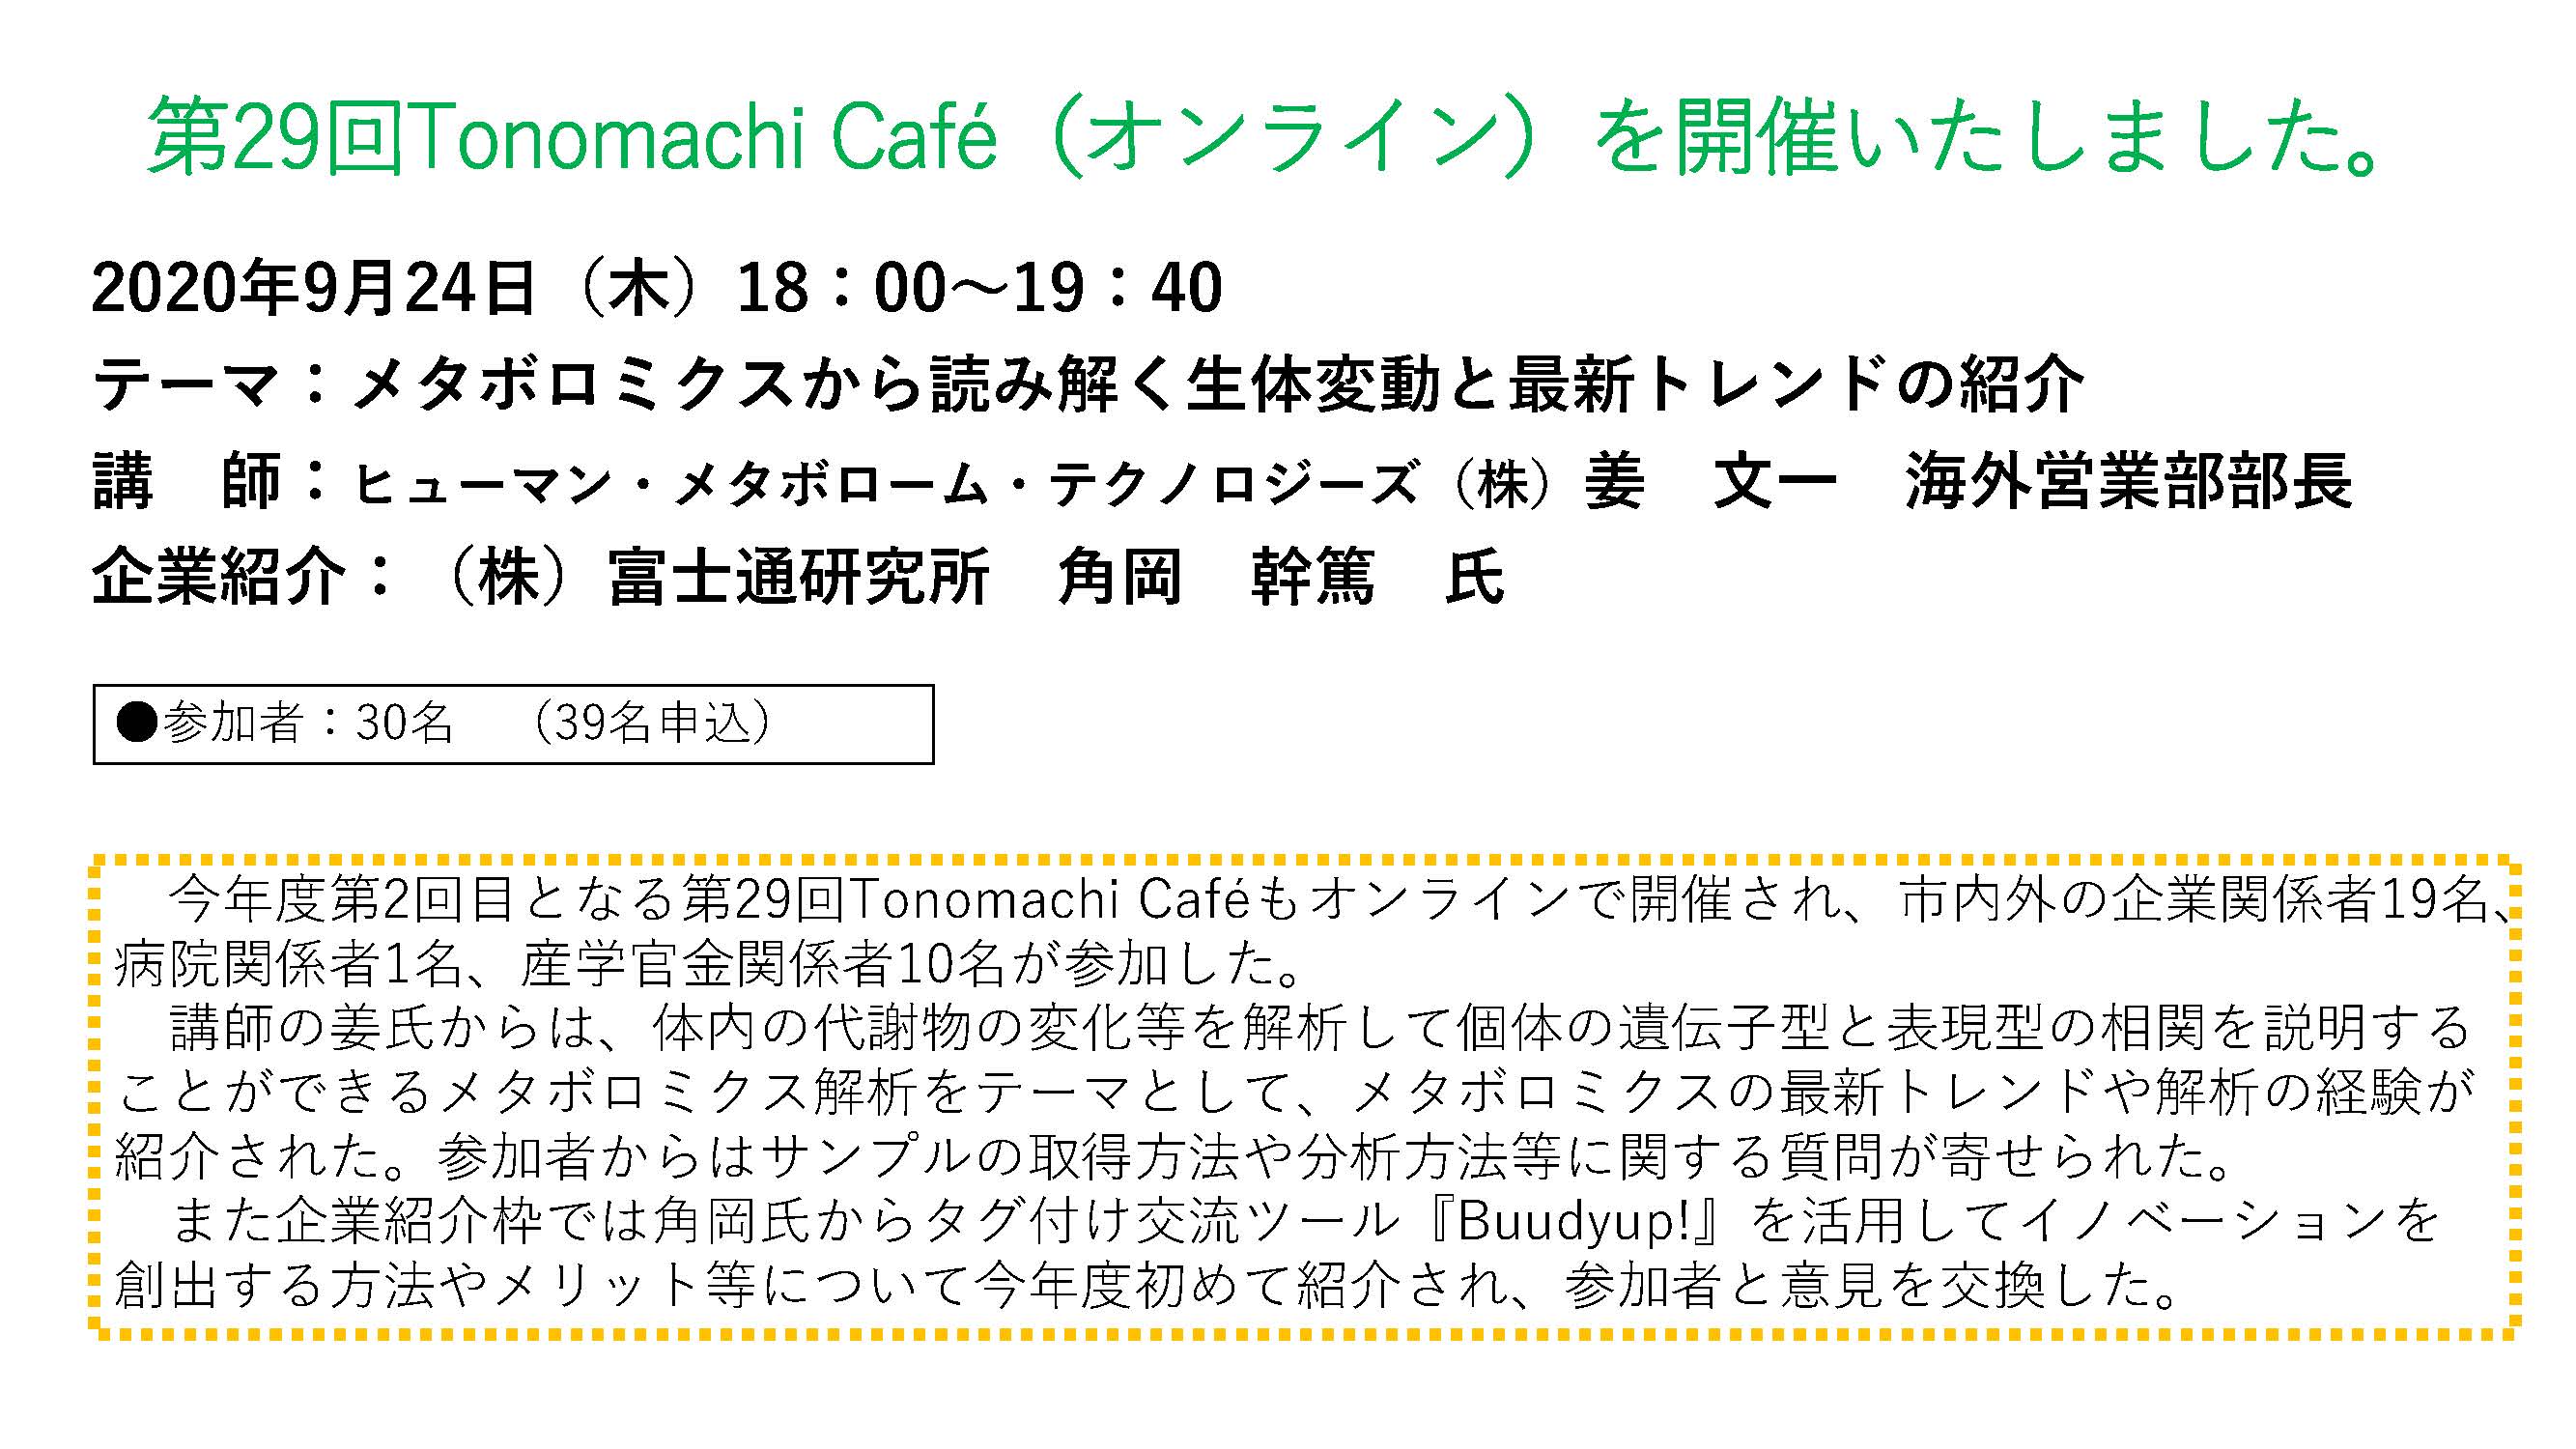 The 28th Tonomachi café online version image